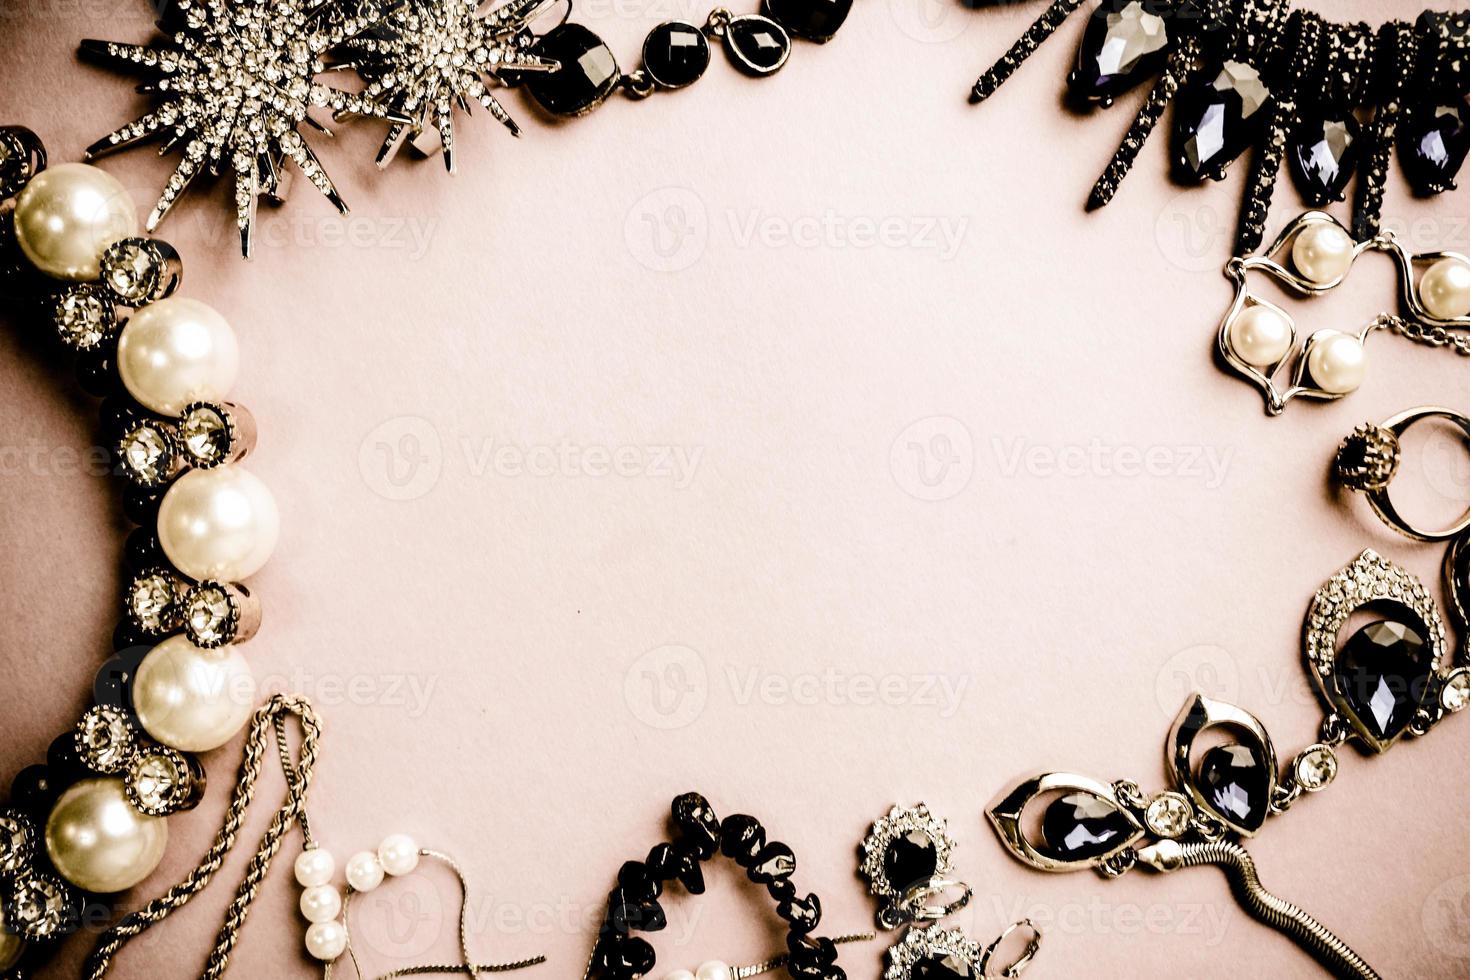 mooi kostbaar glimmend sieraden modieus glamoureus sieraden set, ketting, oorbellen, ringen, kettingen, broches met parels en diamanten Aan een roze Purper achtergrond. vlak leggen, top visie, kopiëren plaats foto